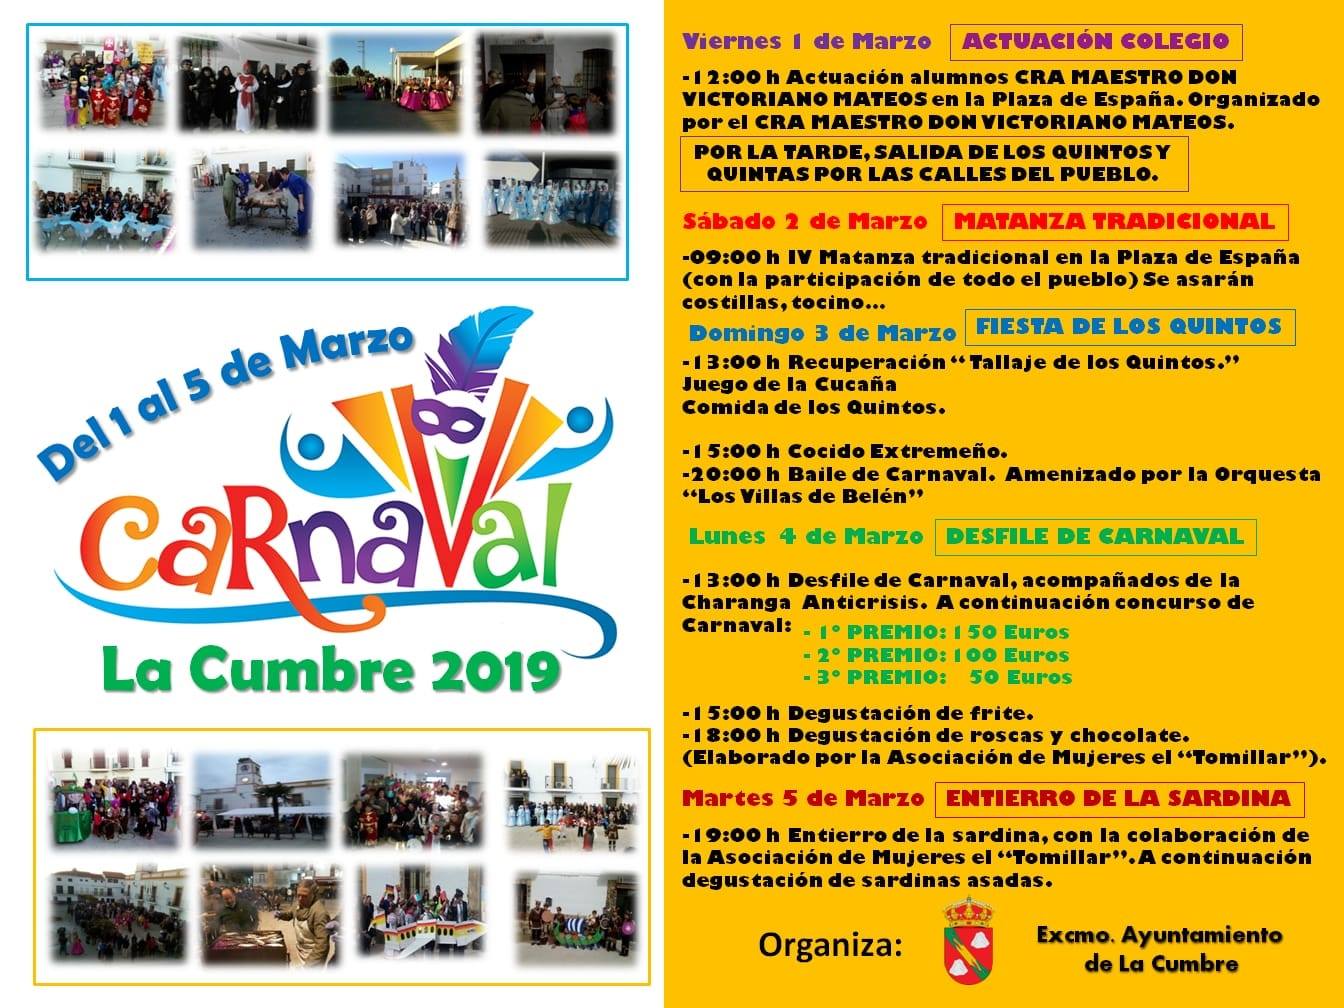 Carnaval 2019 - La Cumbre (Cáceres)